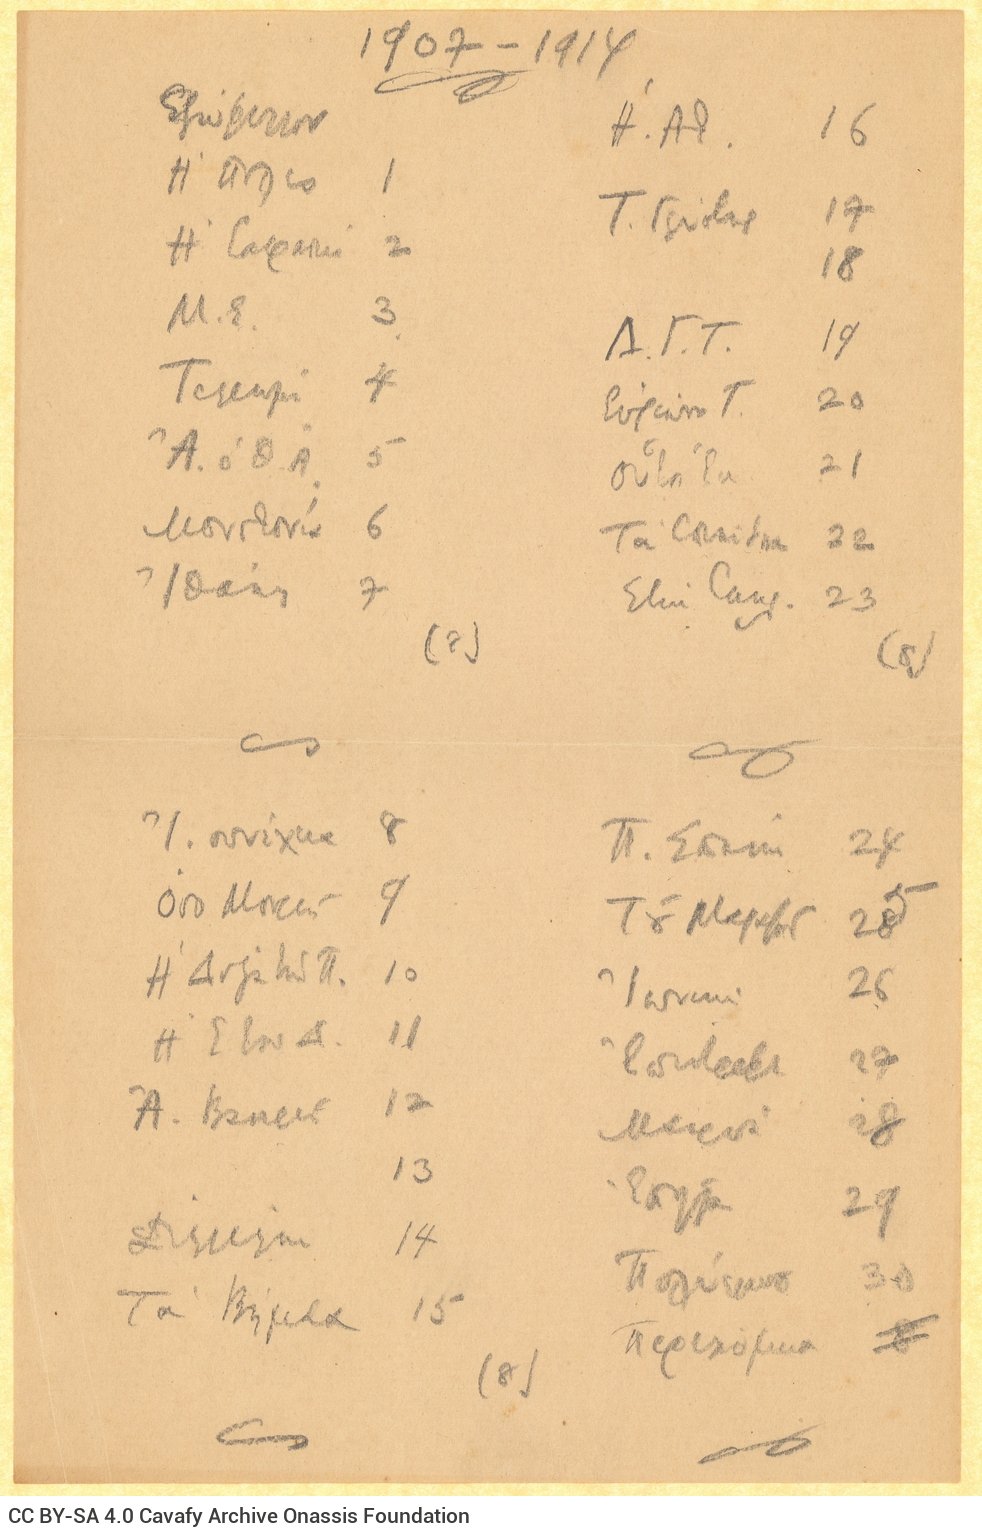 Χειρόγραφος κατάλογος ποιημάτων σε δύο στήλες, στη μία όψη φύλλου �